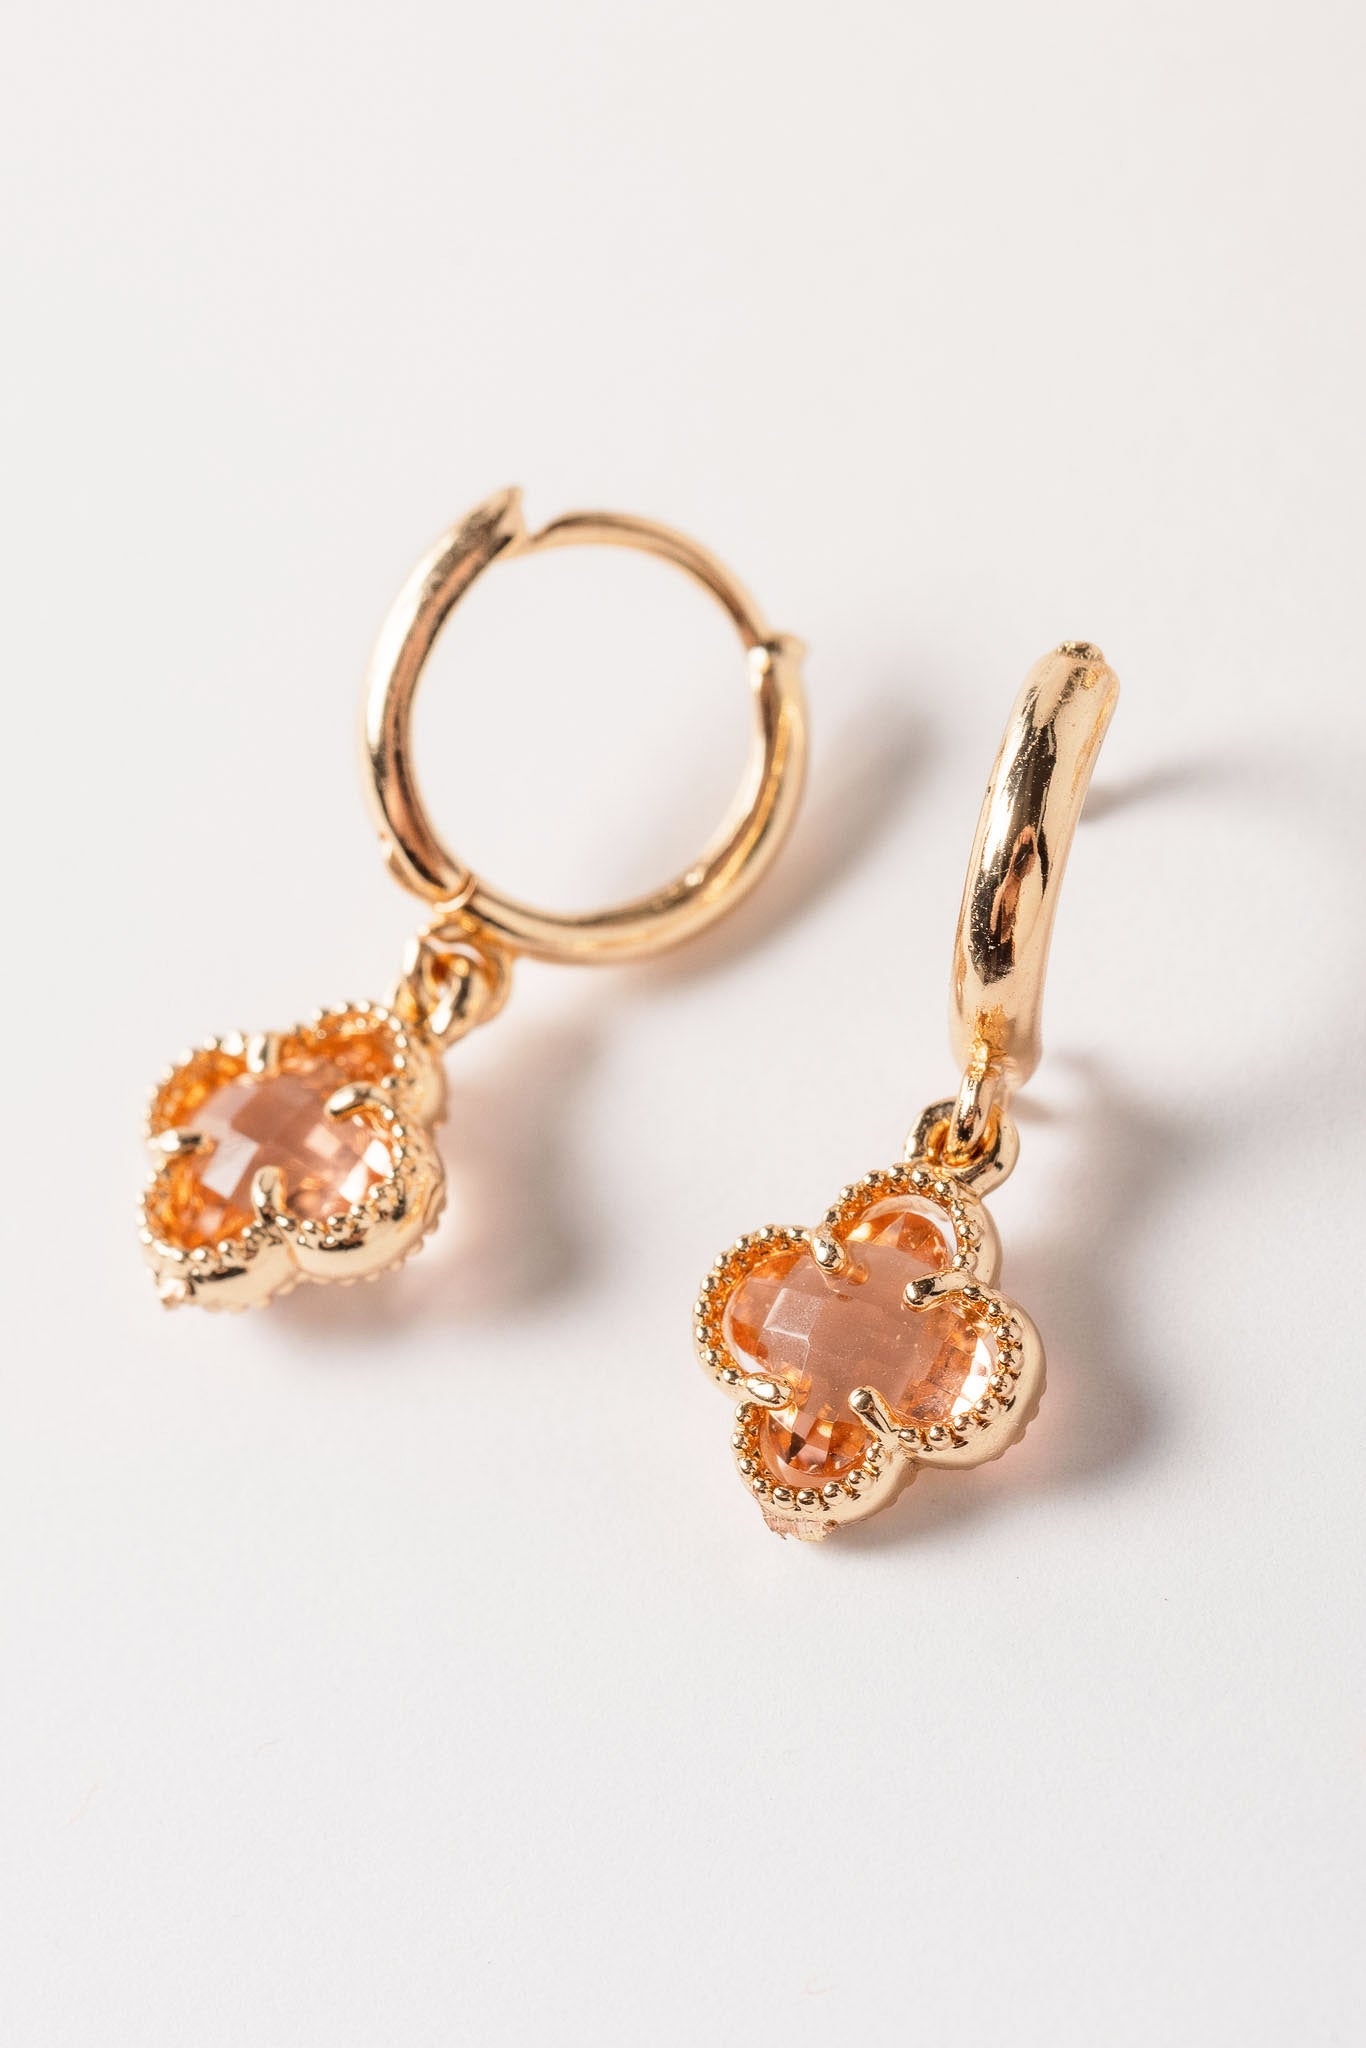 Clover and Rhinestone Huggie Earring Set